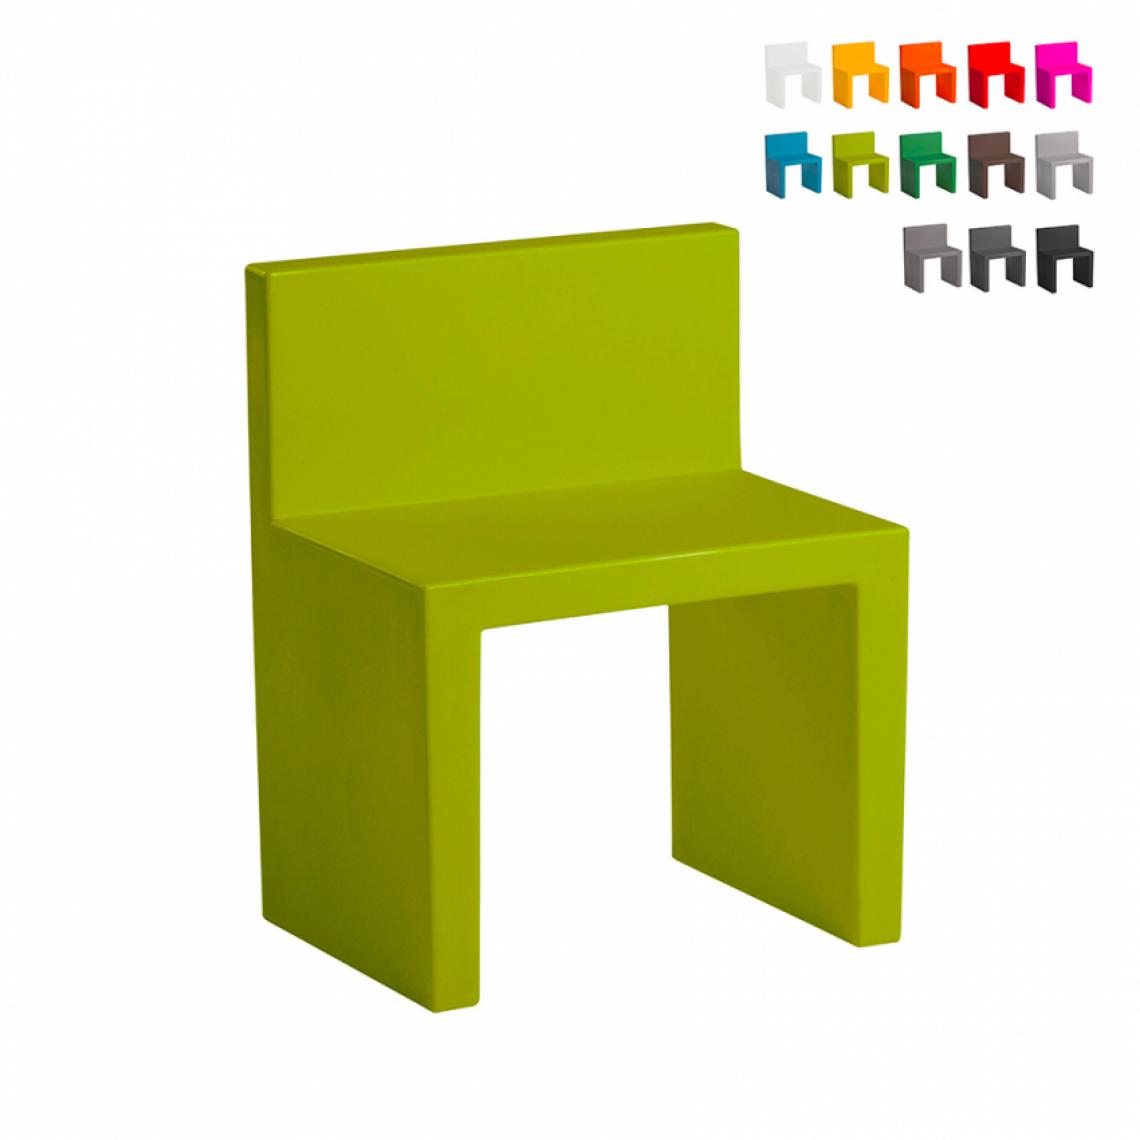 Slide - Chaise au design moderne Slide Angolo Retto pour la maison et le jardin, Couleur: Vert foncé - Chaises